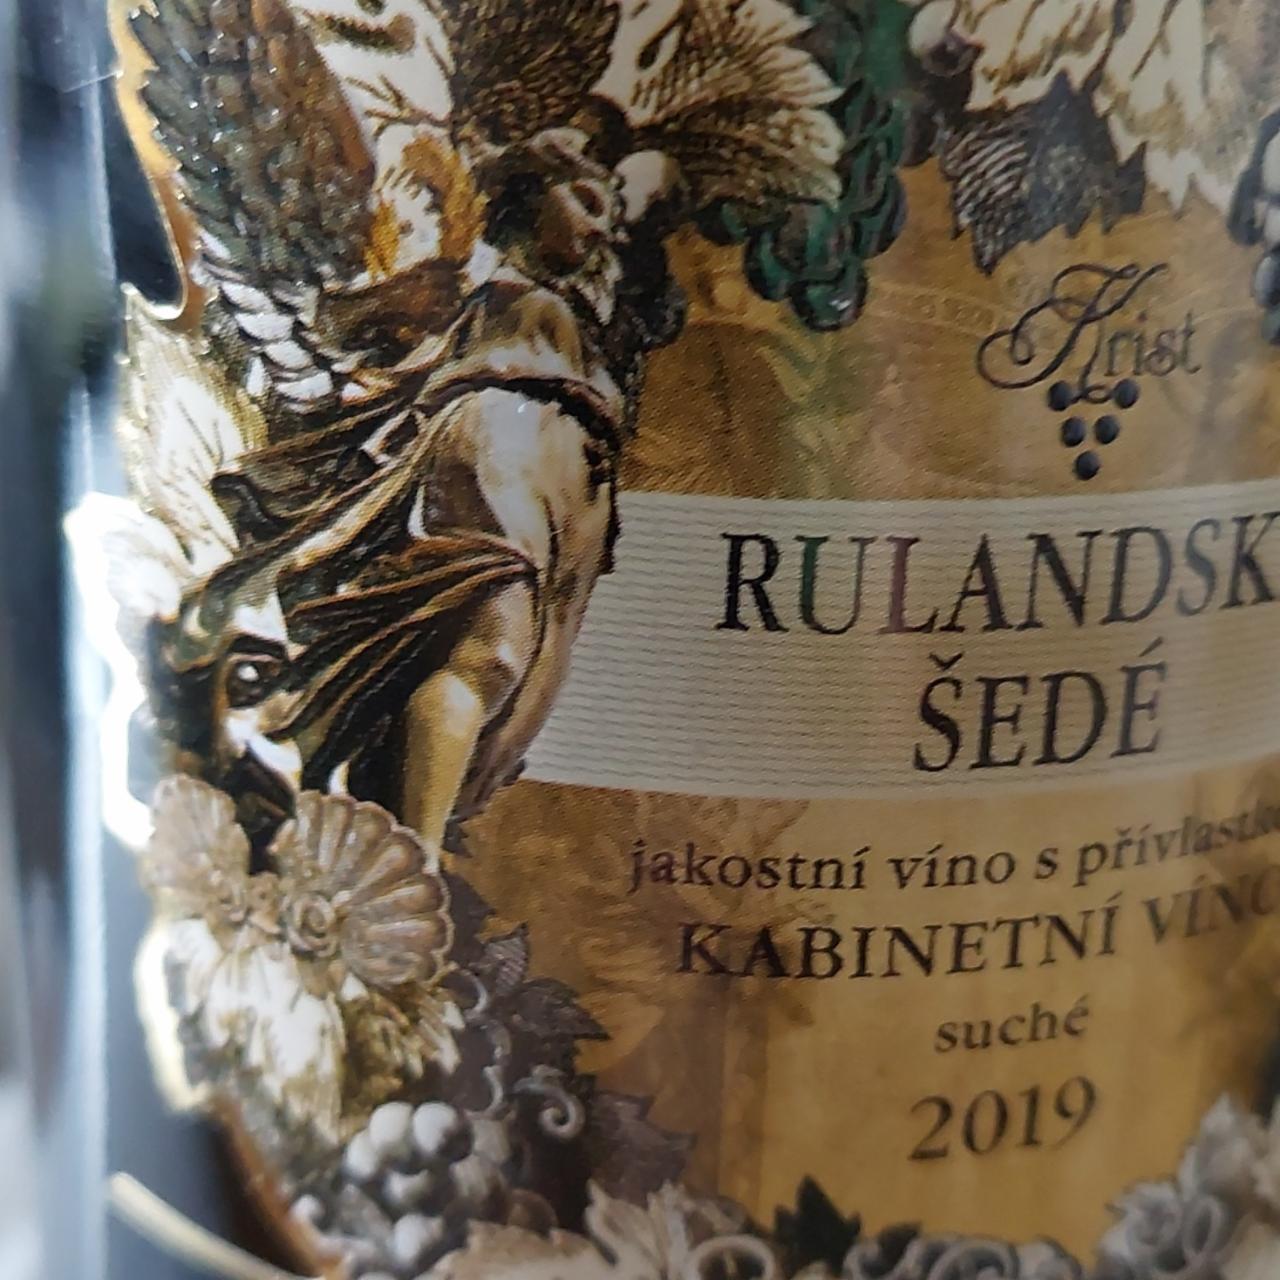 Fotografie - Rulandské šedé jakostní víno s přívlastkem kabinetní víno suché Krist